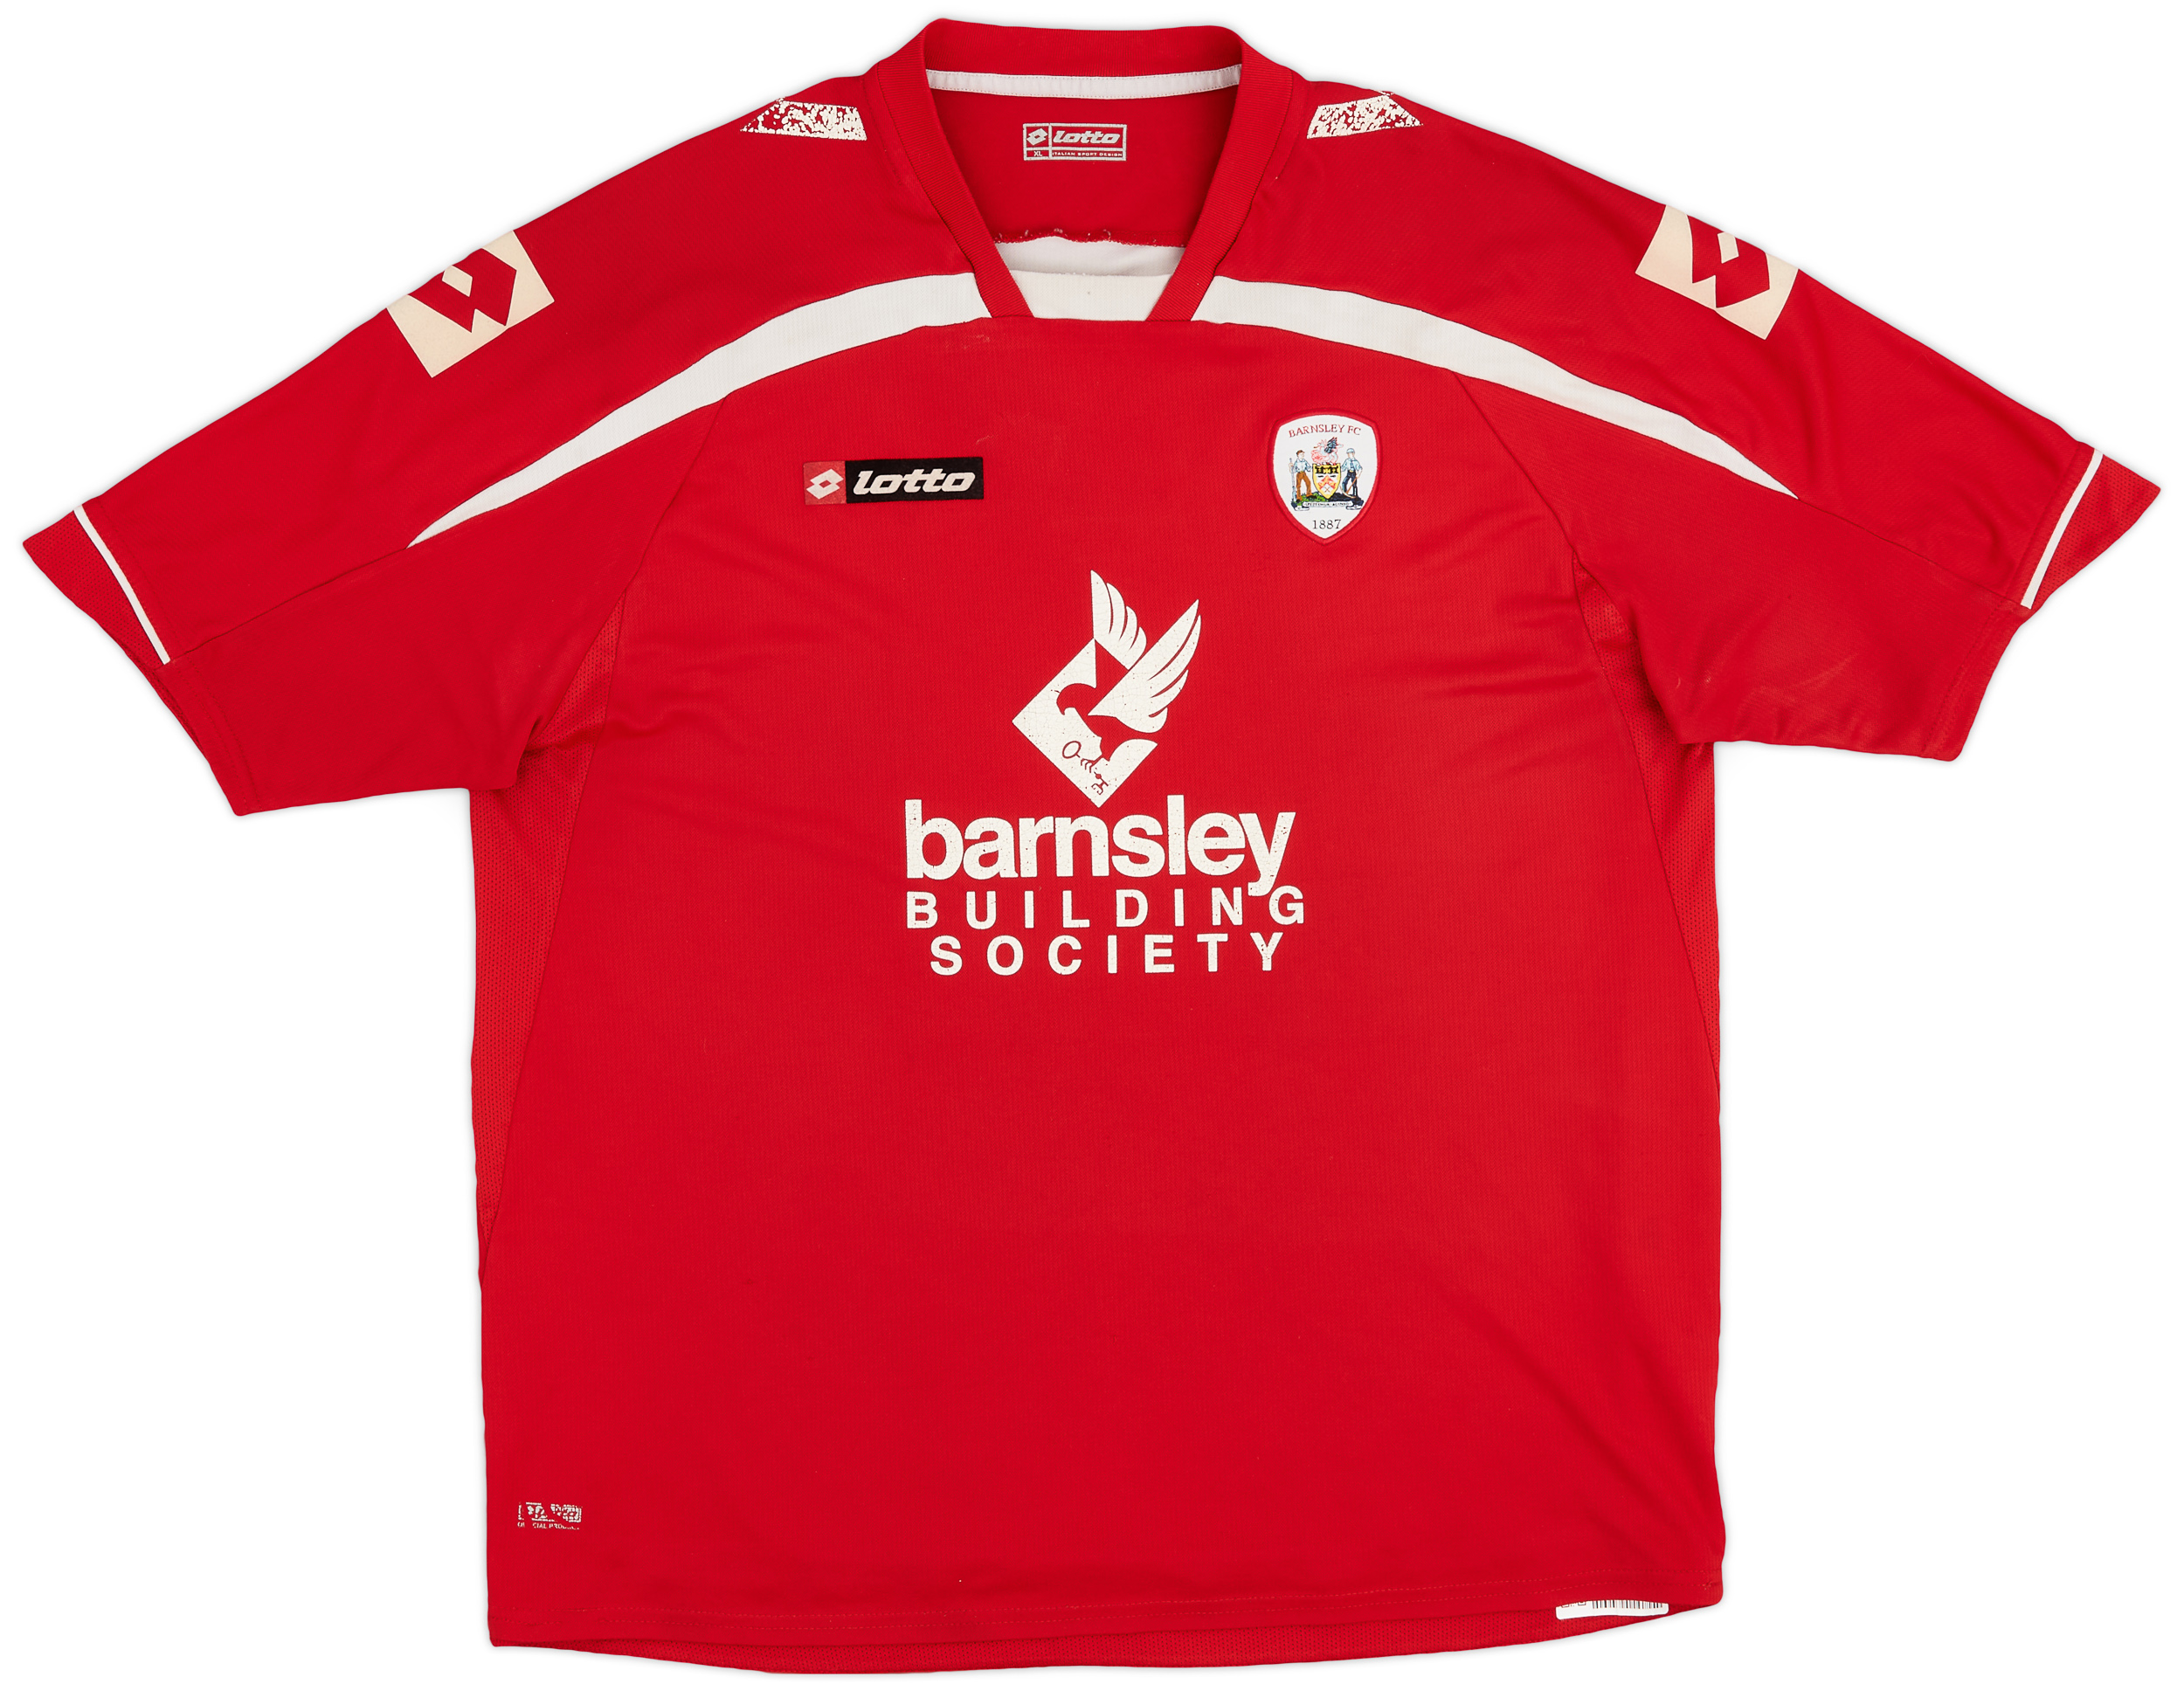 2010-11 Barnsley Home Shirt - 6/10 - ()